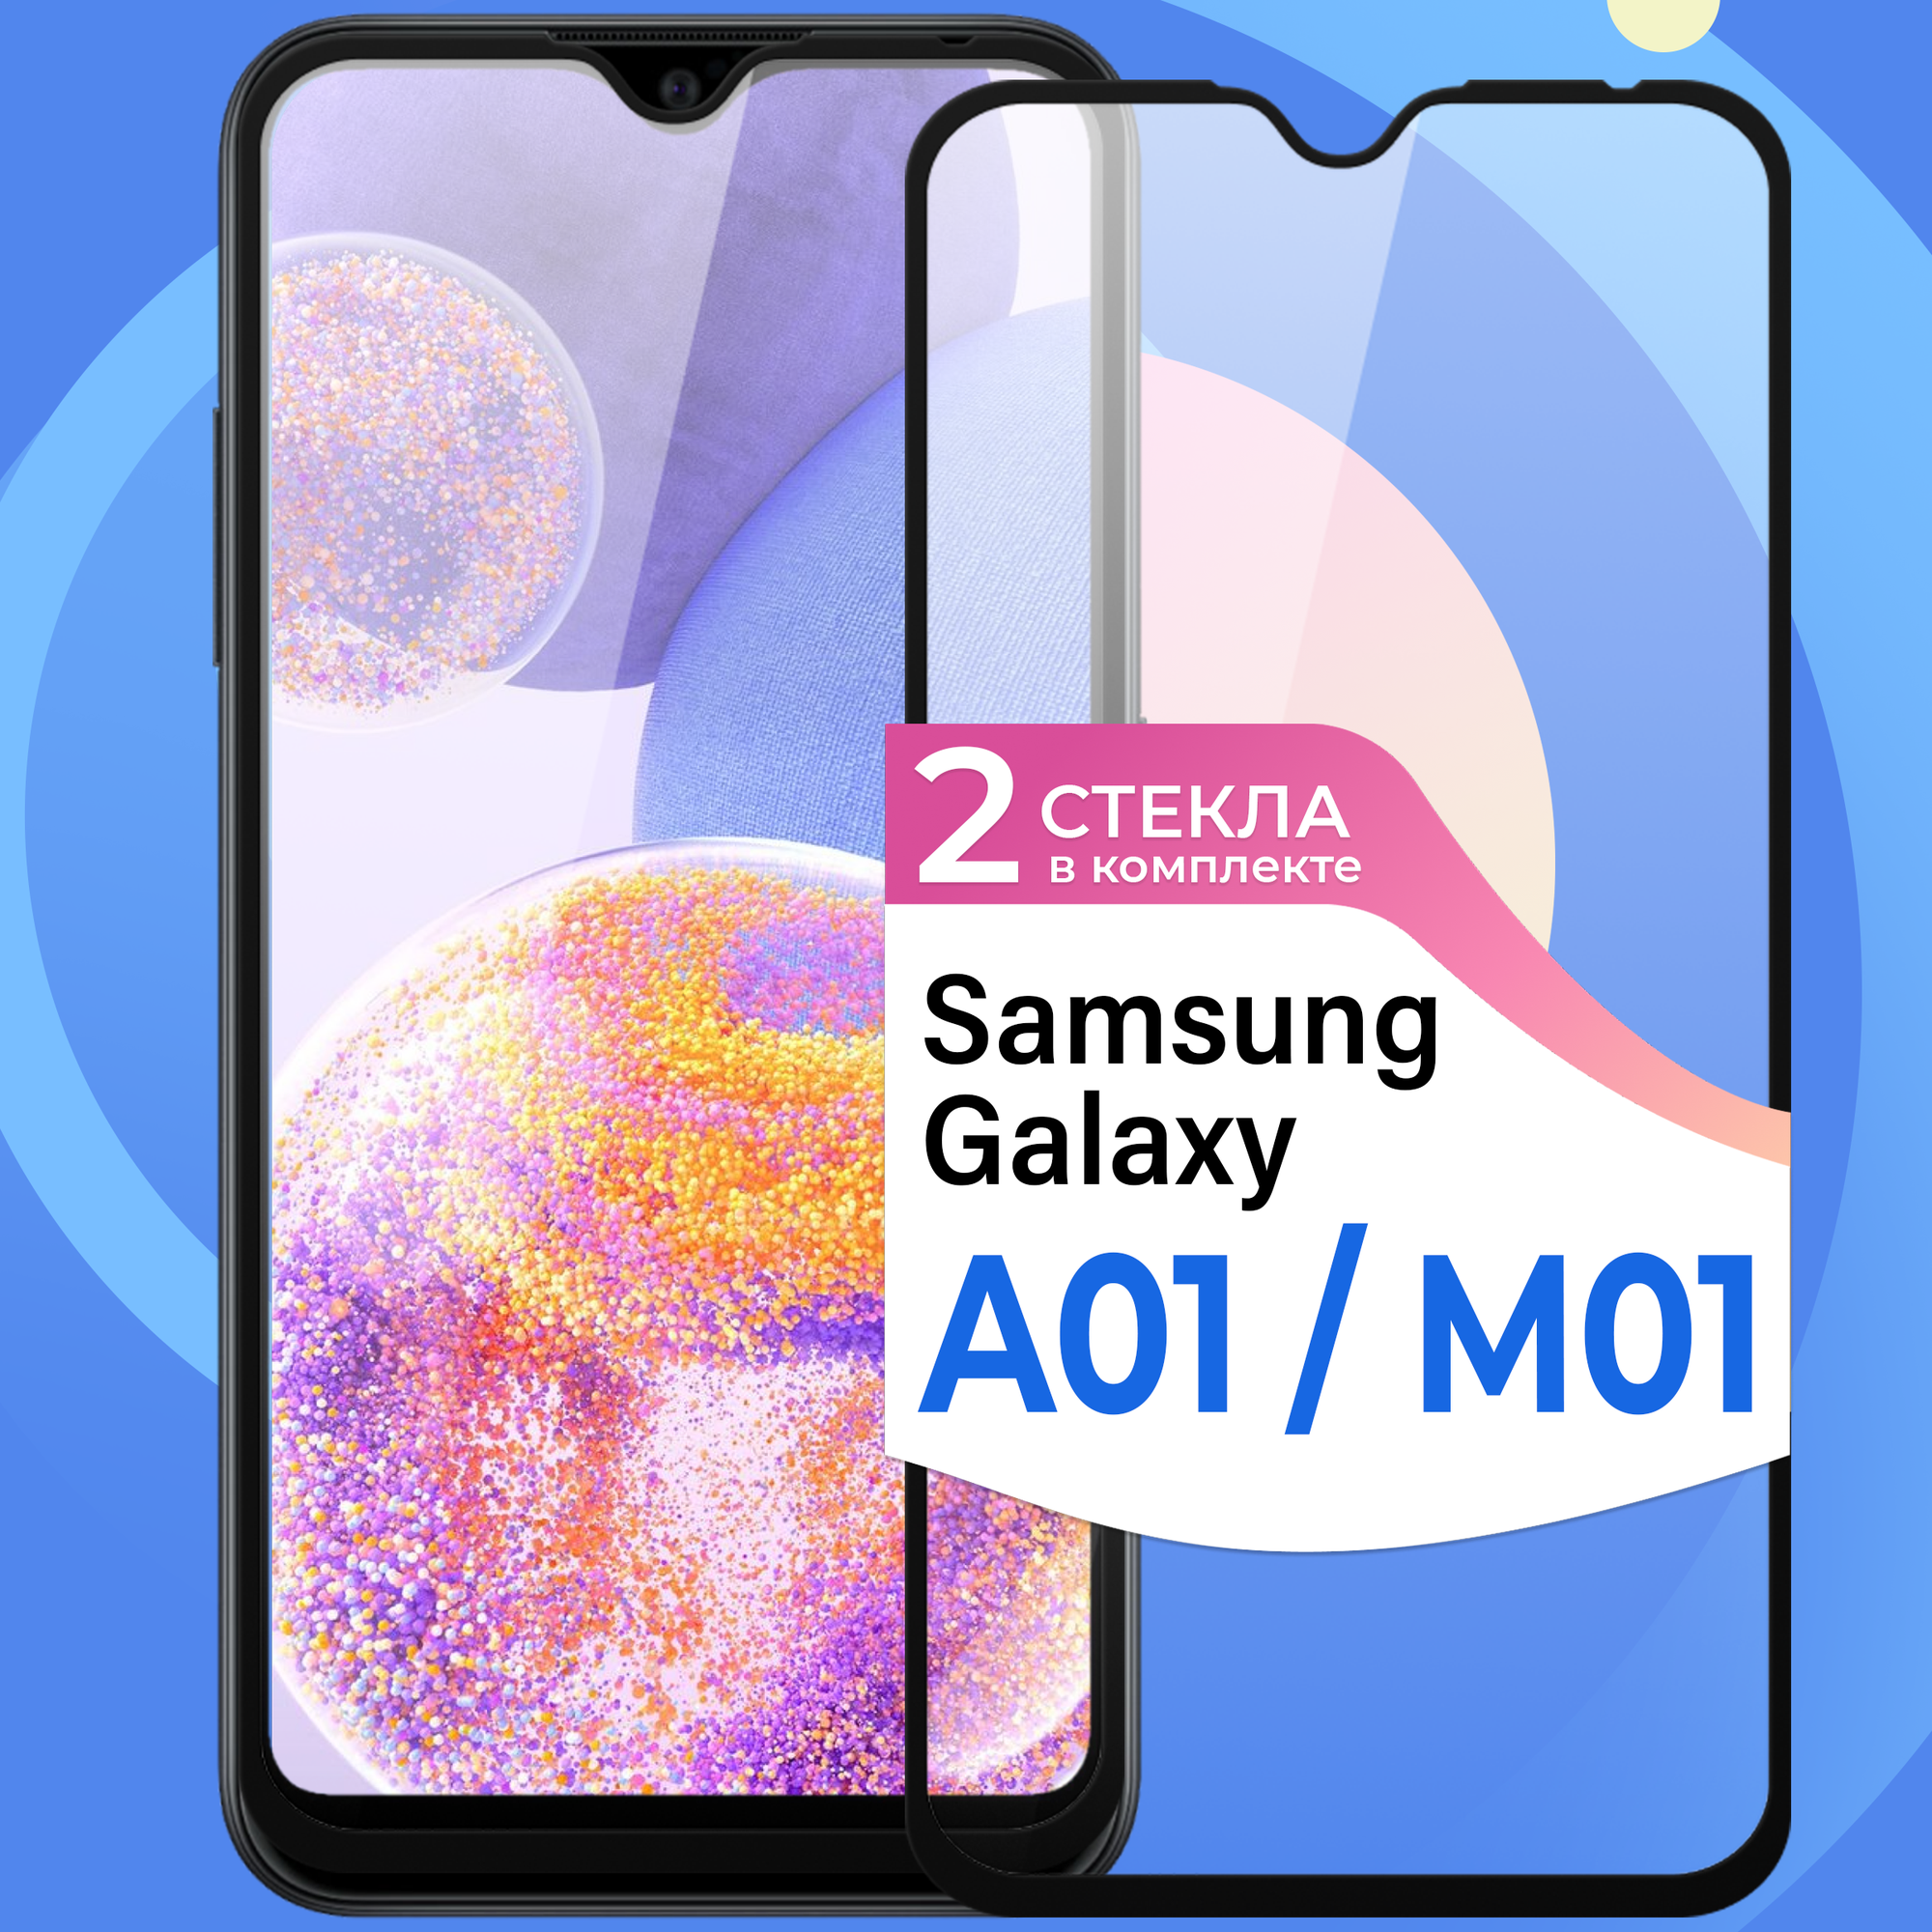 Комплект 2 шт. Защитное стекло на телефон Samsung Galaxy A01 и Galaxy M01 / Противоударное олеофобное стекло для смартфона Самсунг Галакси А01 и Галакси М01